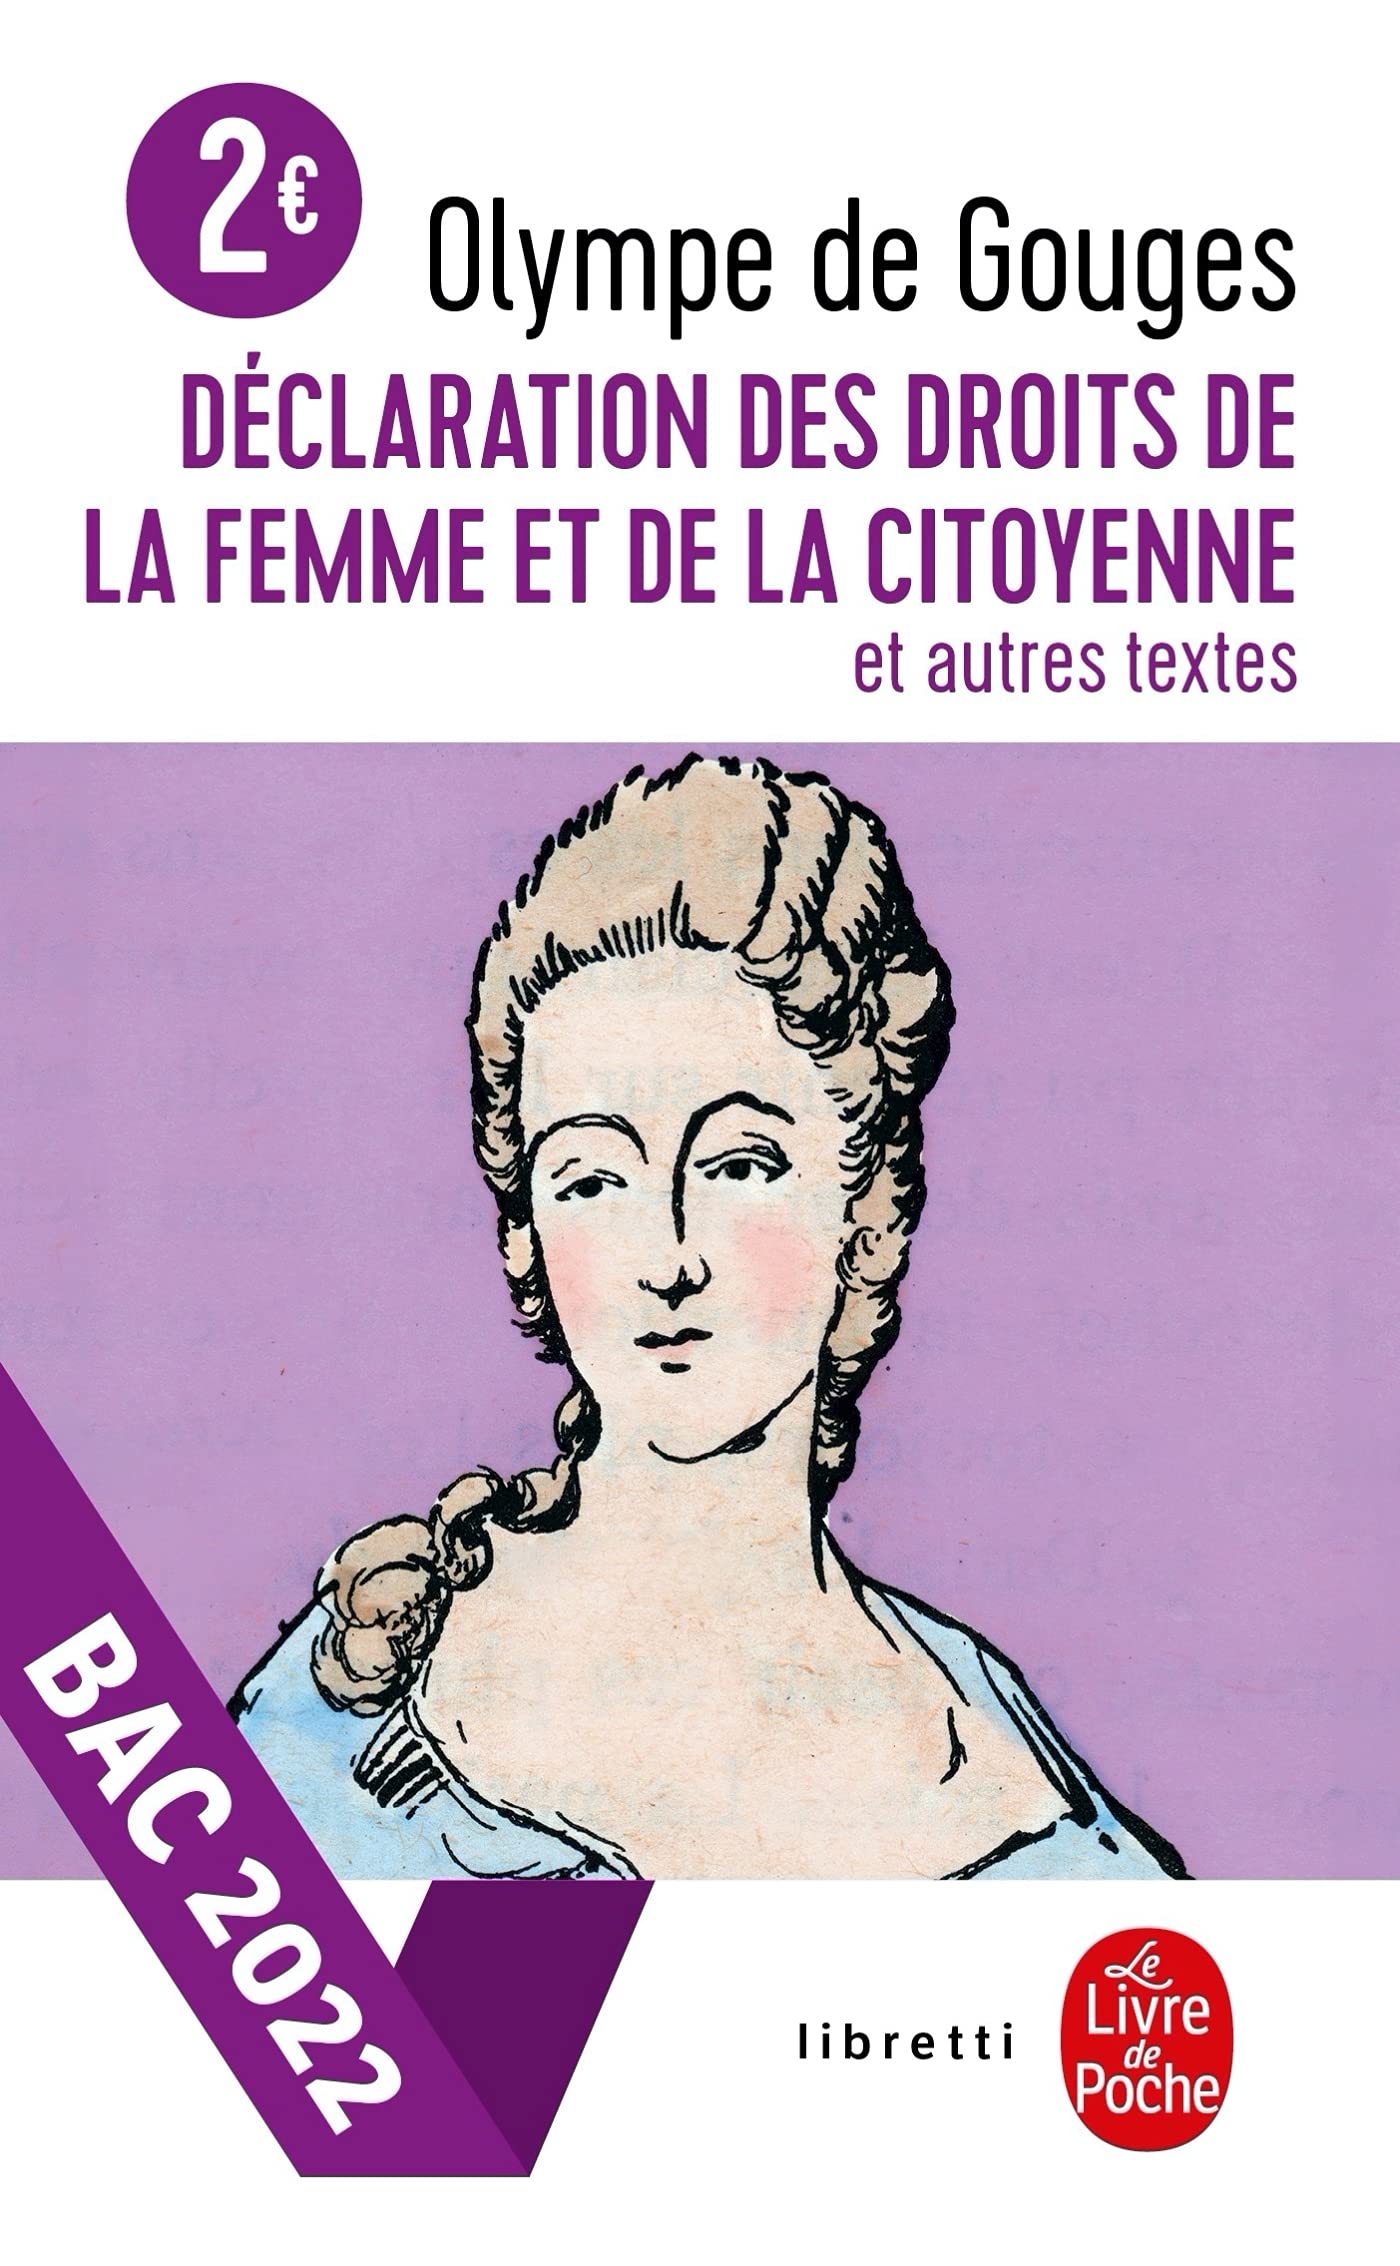 Declaration des droits de la femme et de la citoyenne et autres textes | Olympe de Gouges